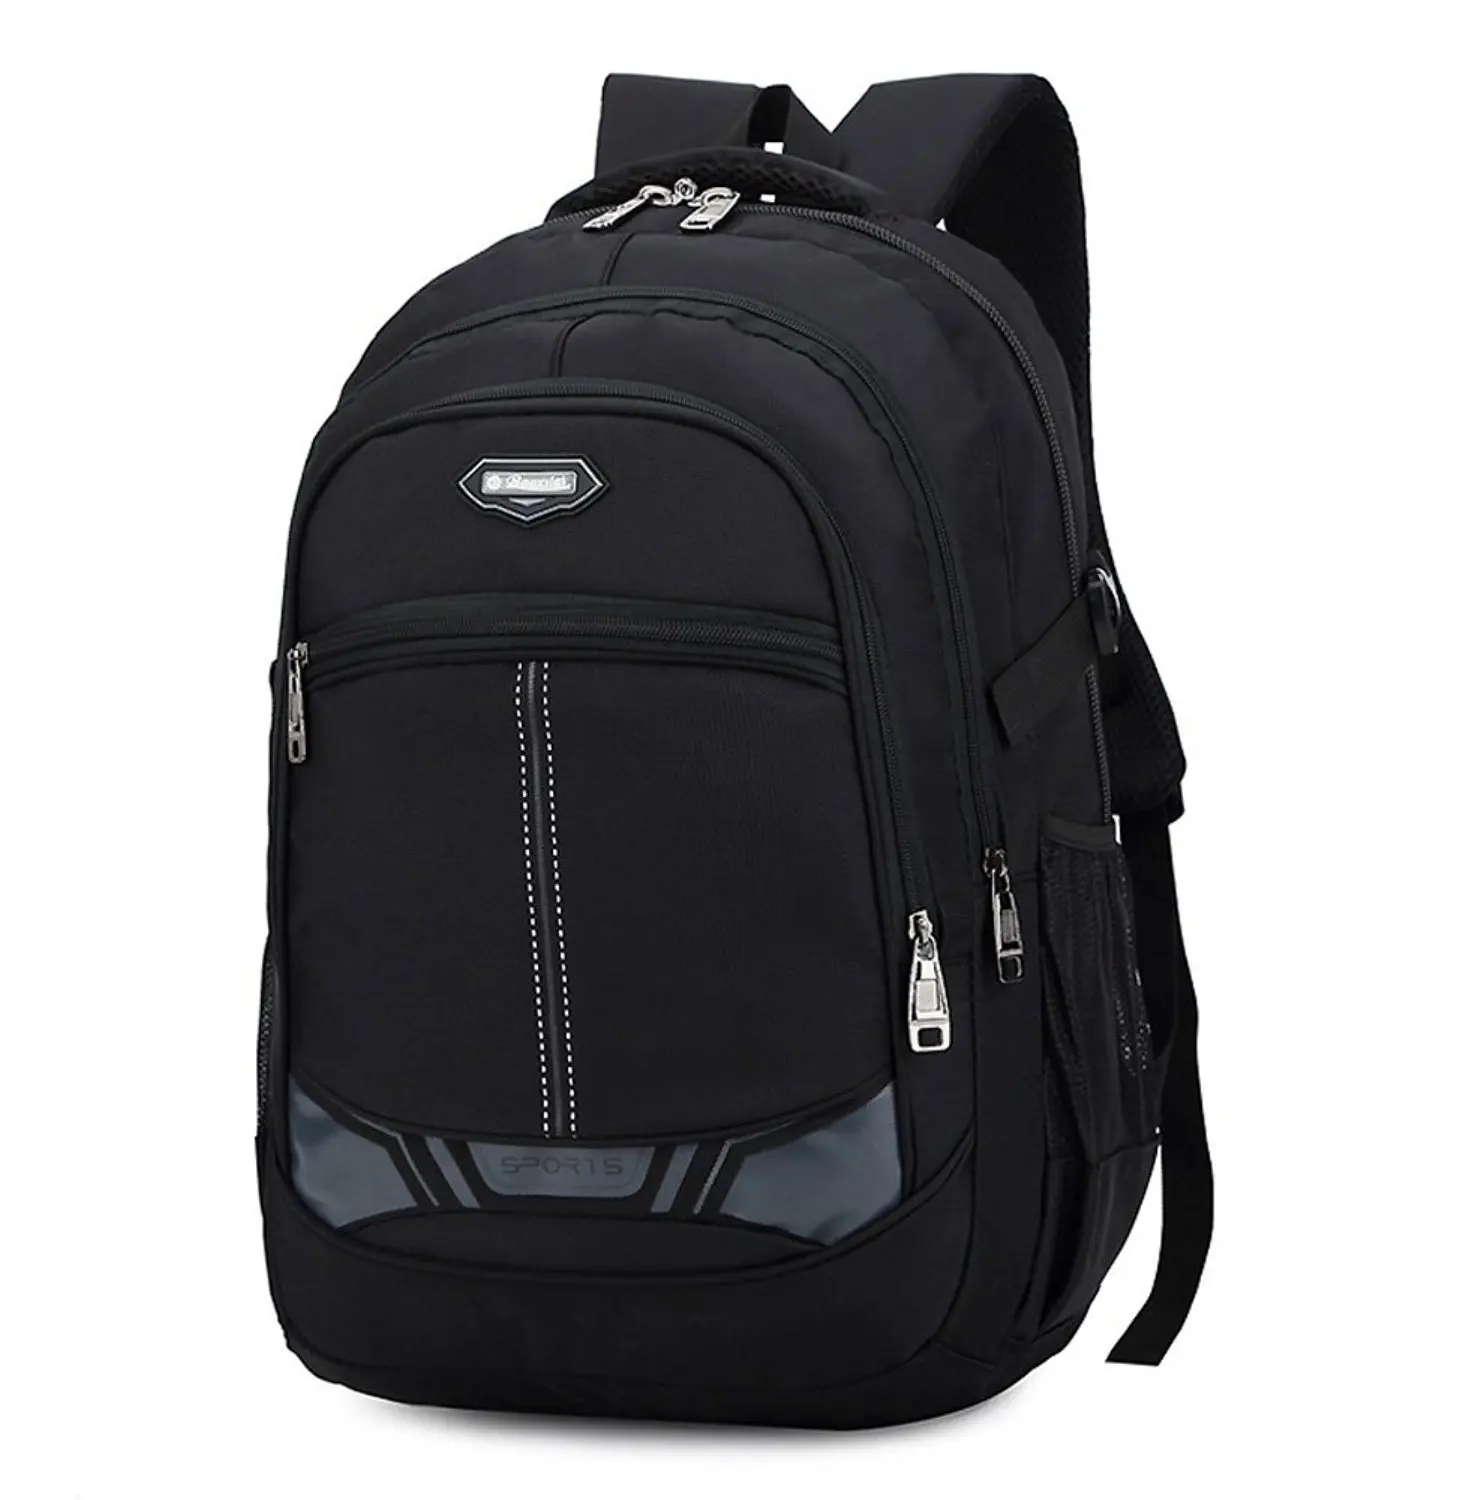 Buy Dlerxi Cool Laptop Backpacks for College School Bag Teen Boys ...